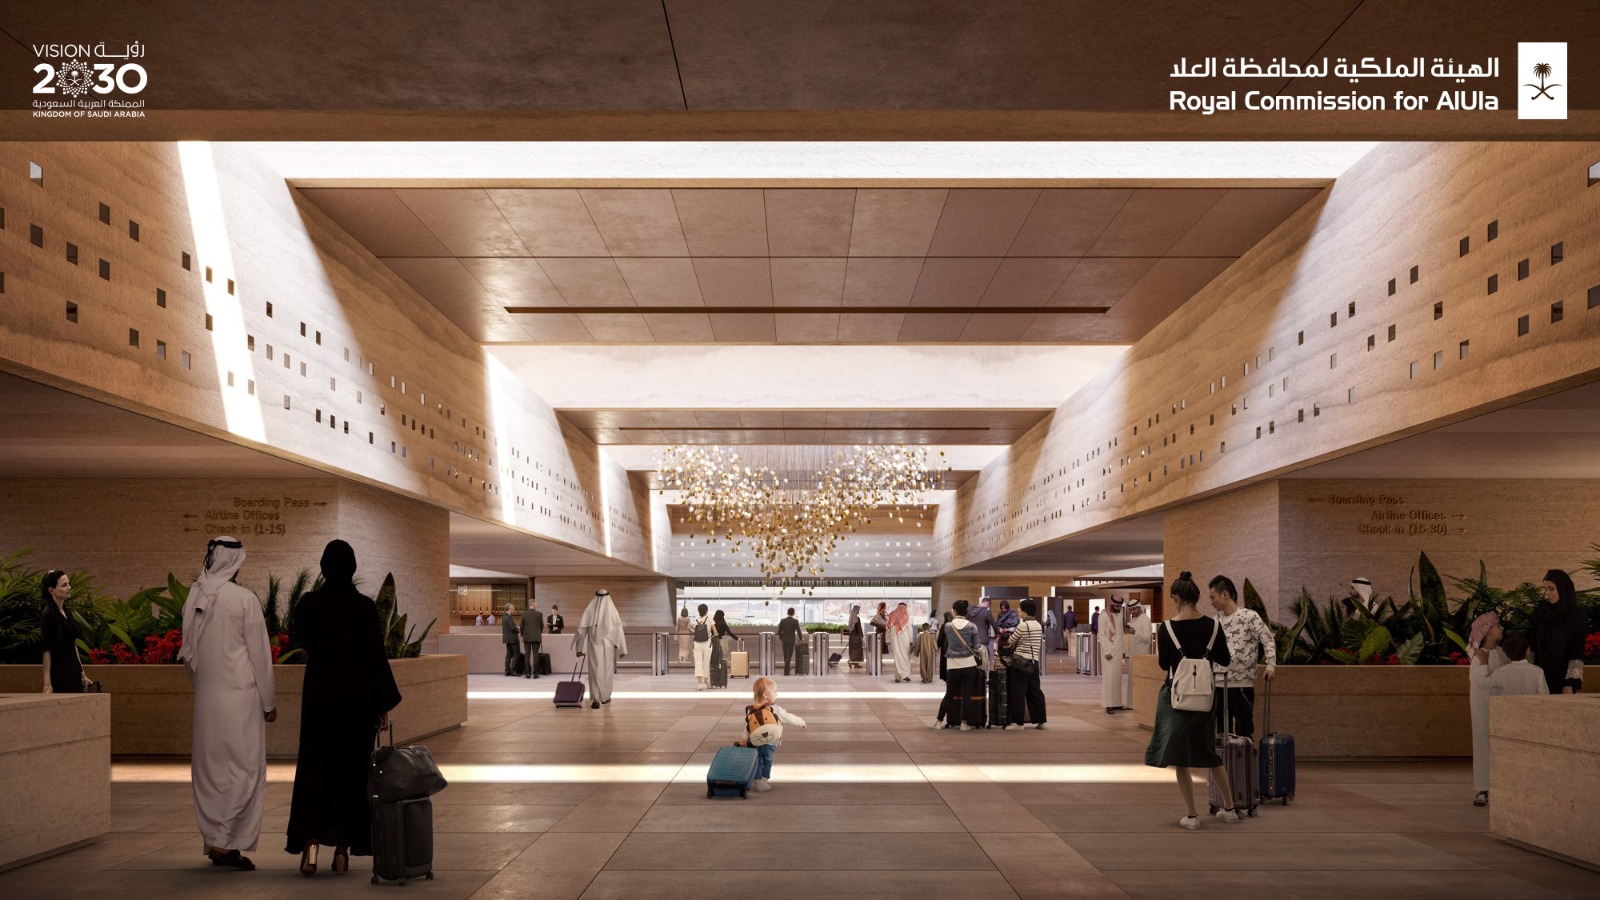 الهيئة الملكية لمحافظة العلا تعلن تصاميم توسعة مطار العلا الدولي